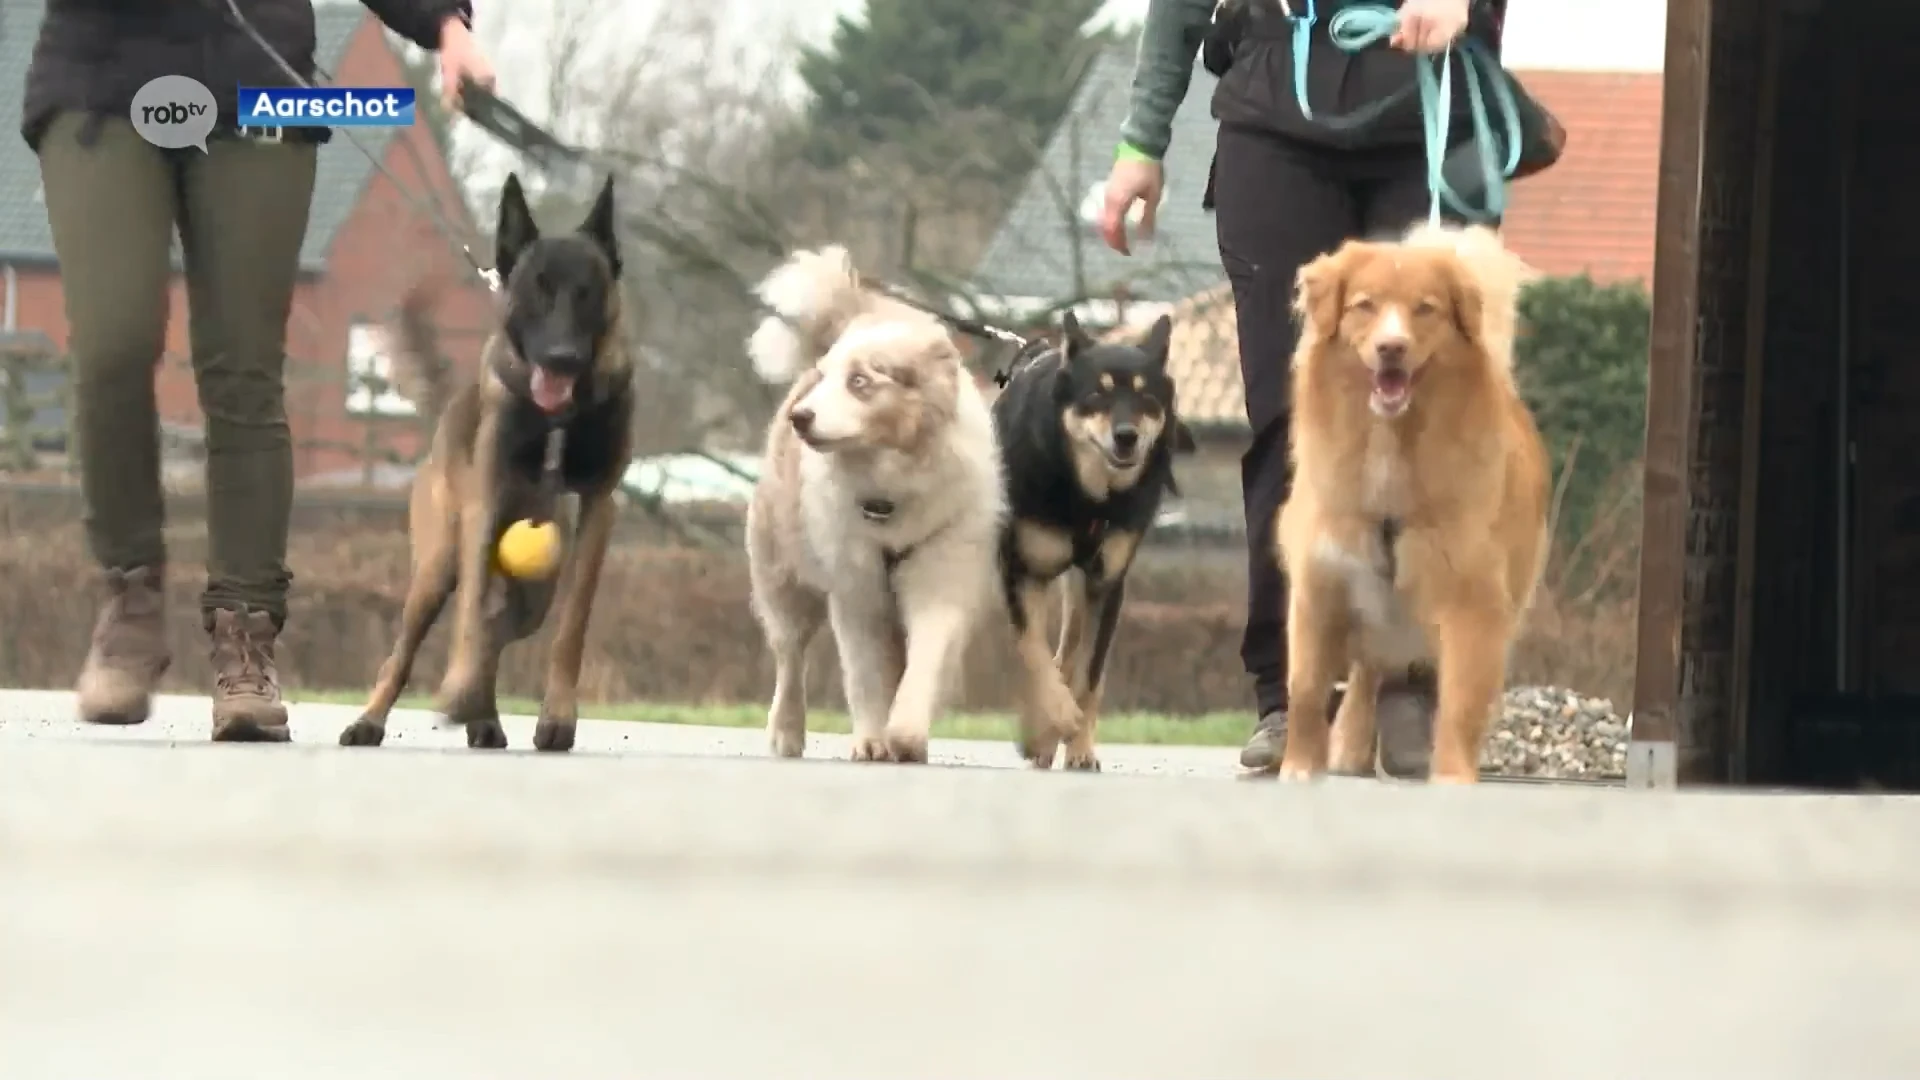 Cani-trail in Rillaar: loop- en wandelparcours voor honden en hun baasjes